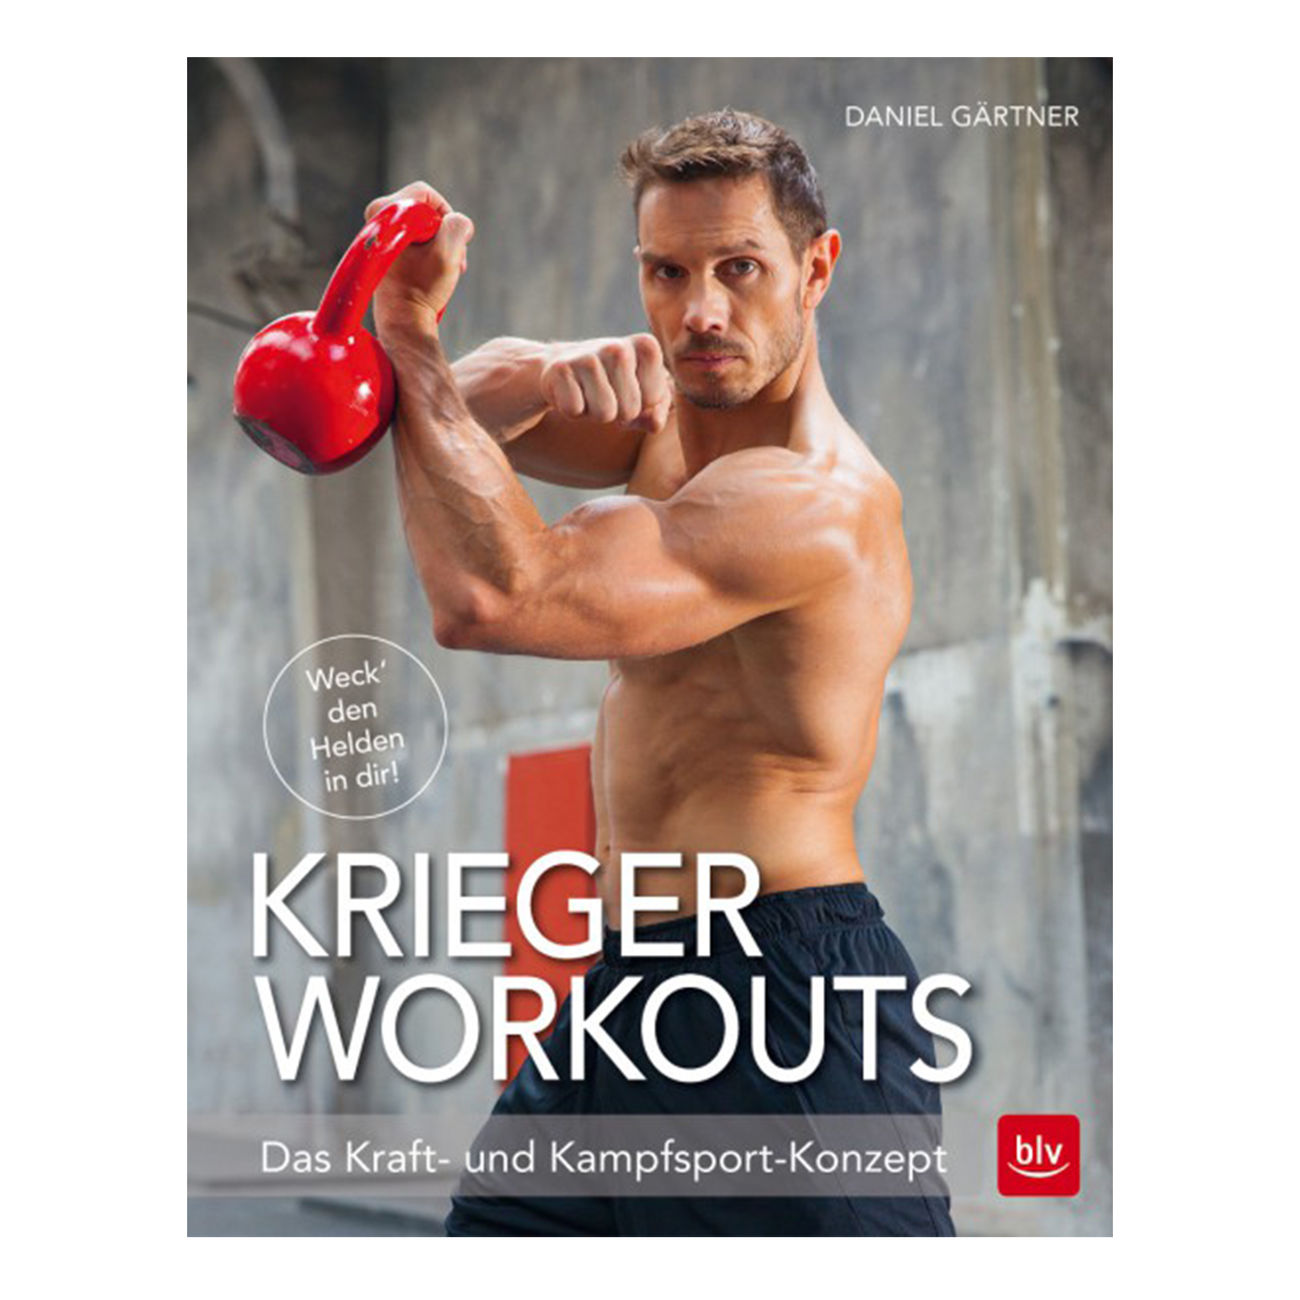 Krieger Workouts - Das Kraft- und Kampfsport-Konzept